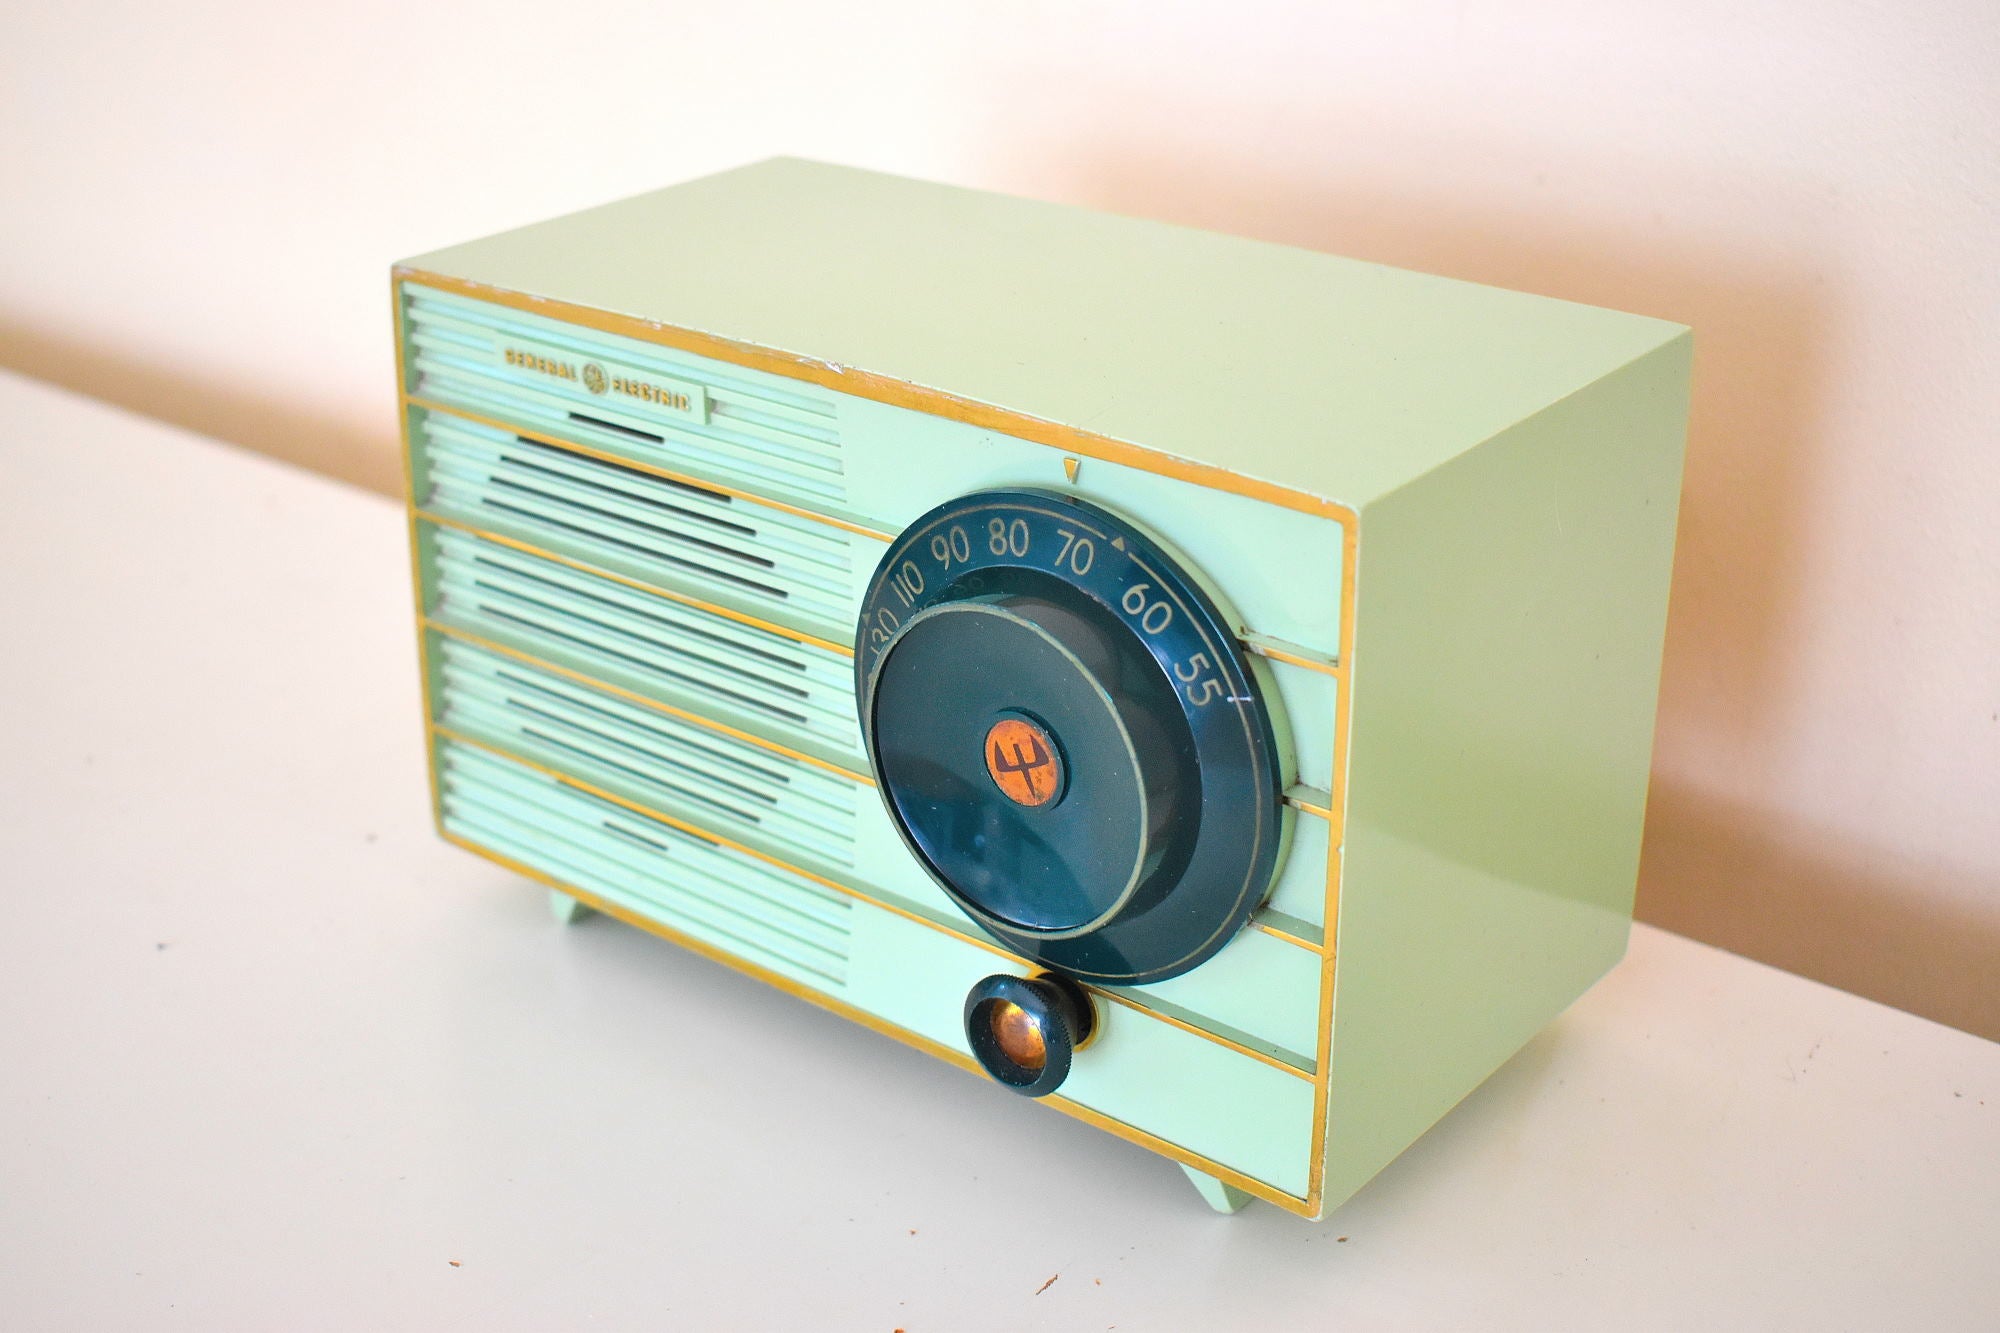 ピスタチオ グリーン 1955 ゼネラル エレクトリック モデル 457S AM 真空管ラジオ 希少カラー！いいね！